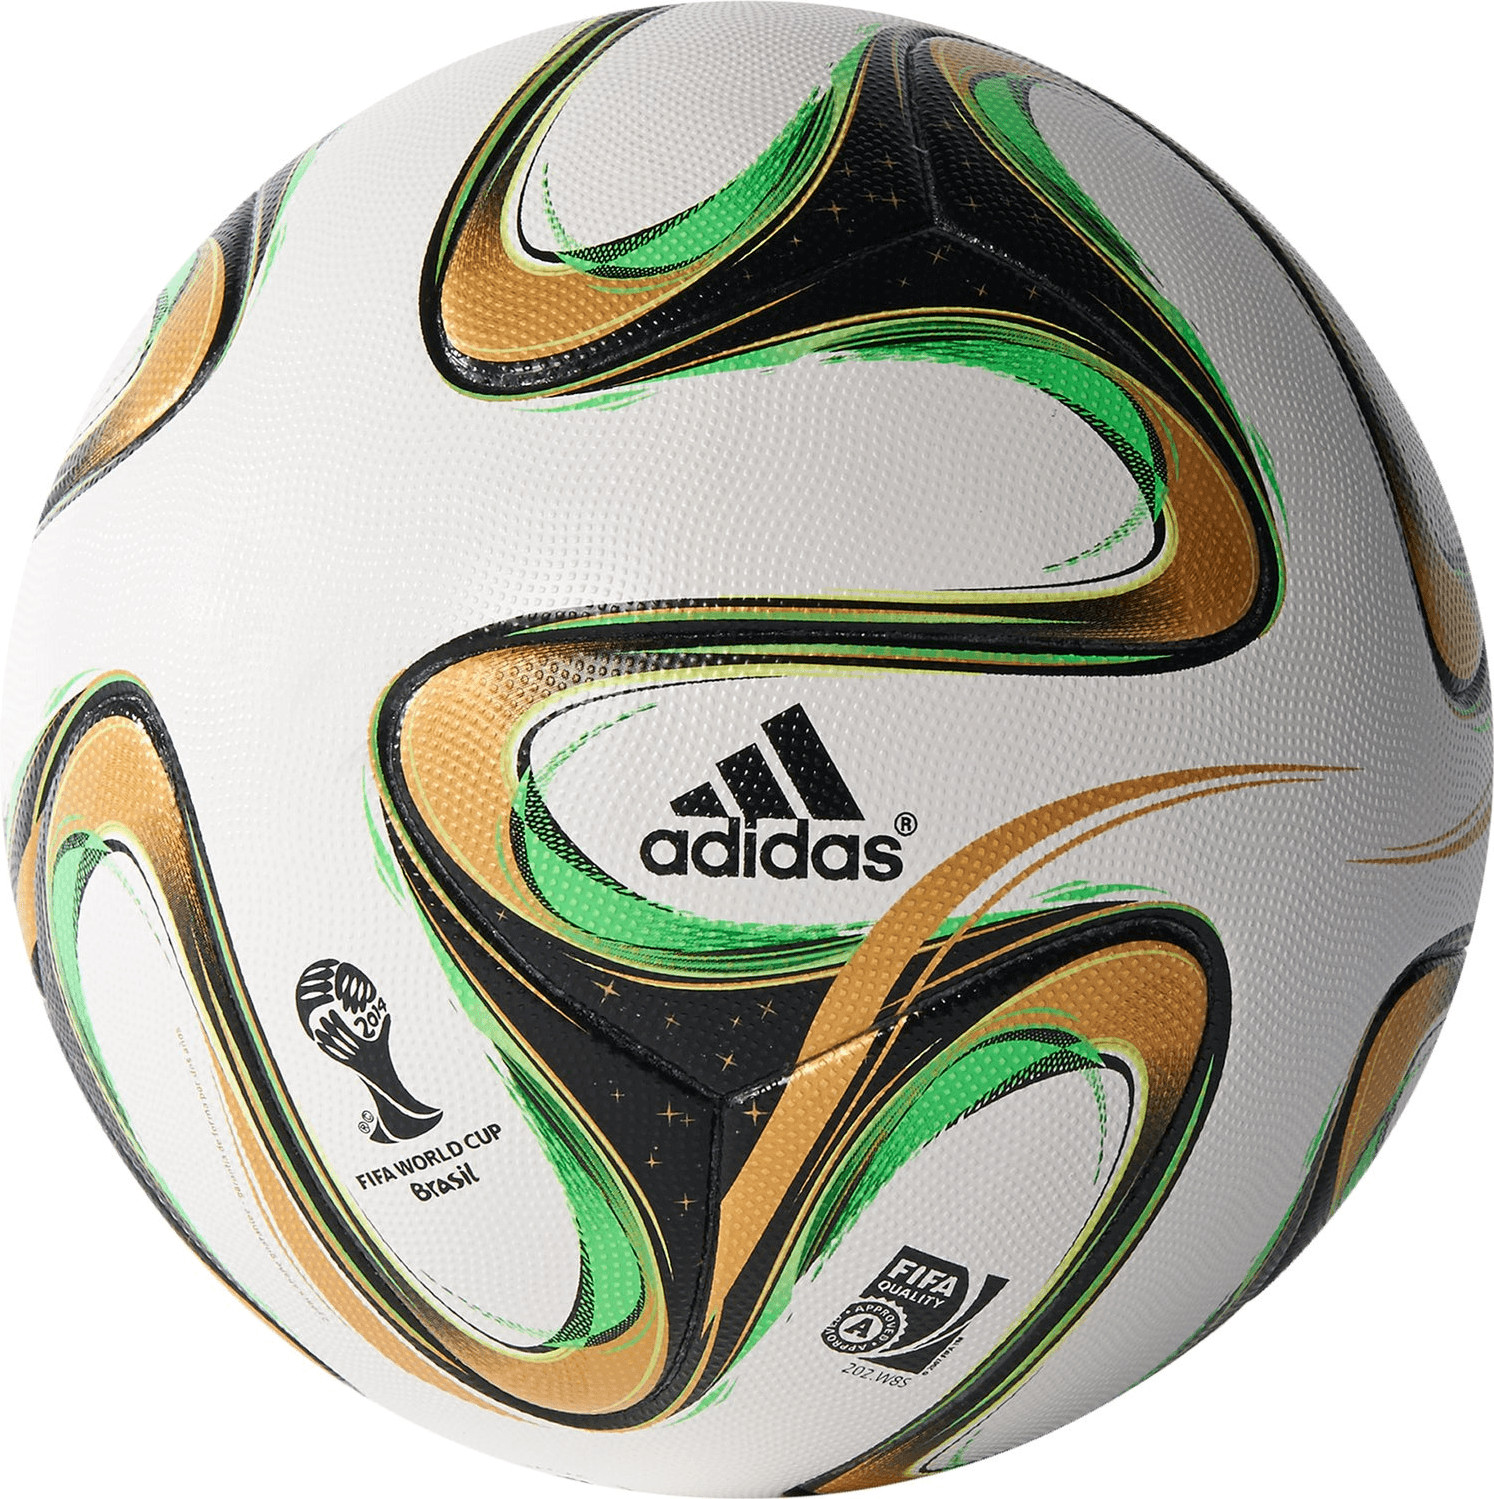 adidas brazuca official match ball